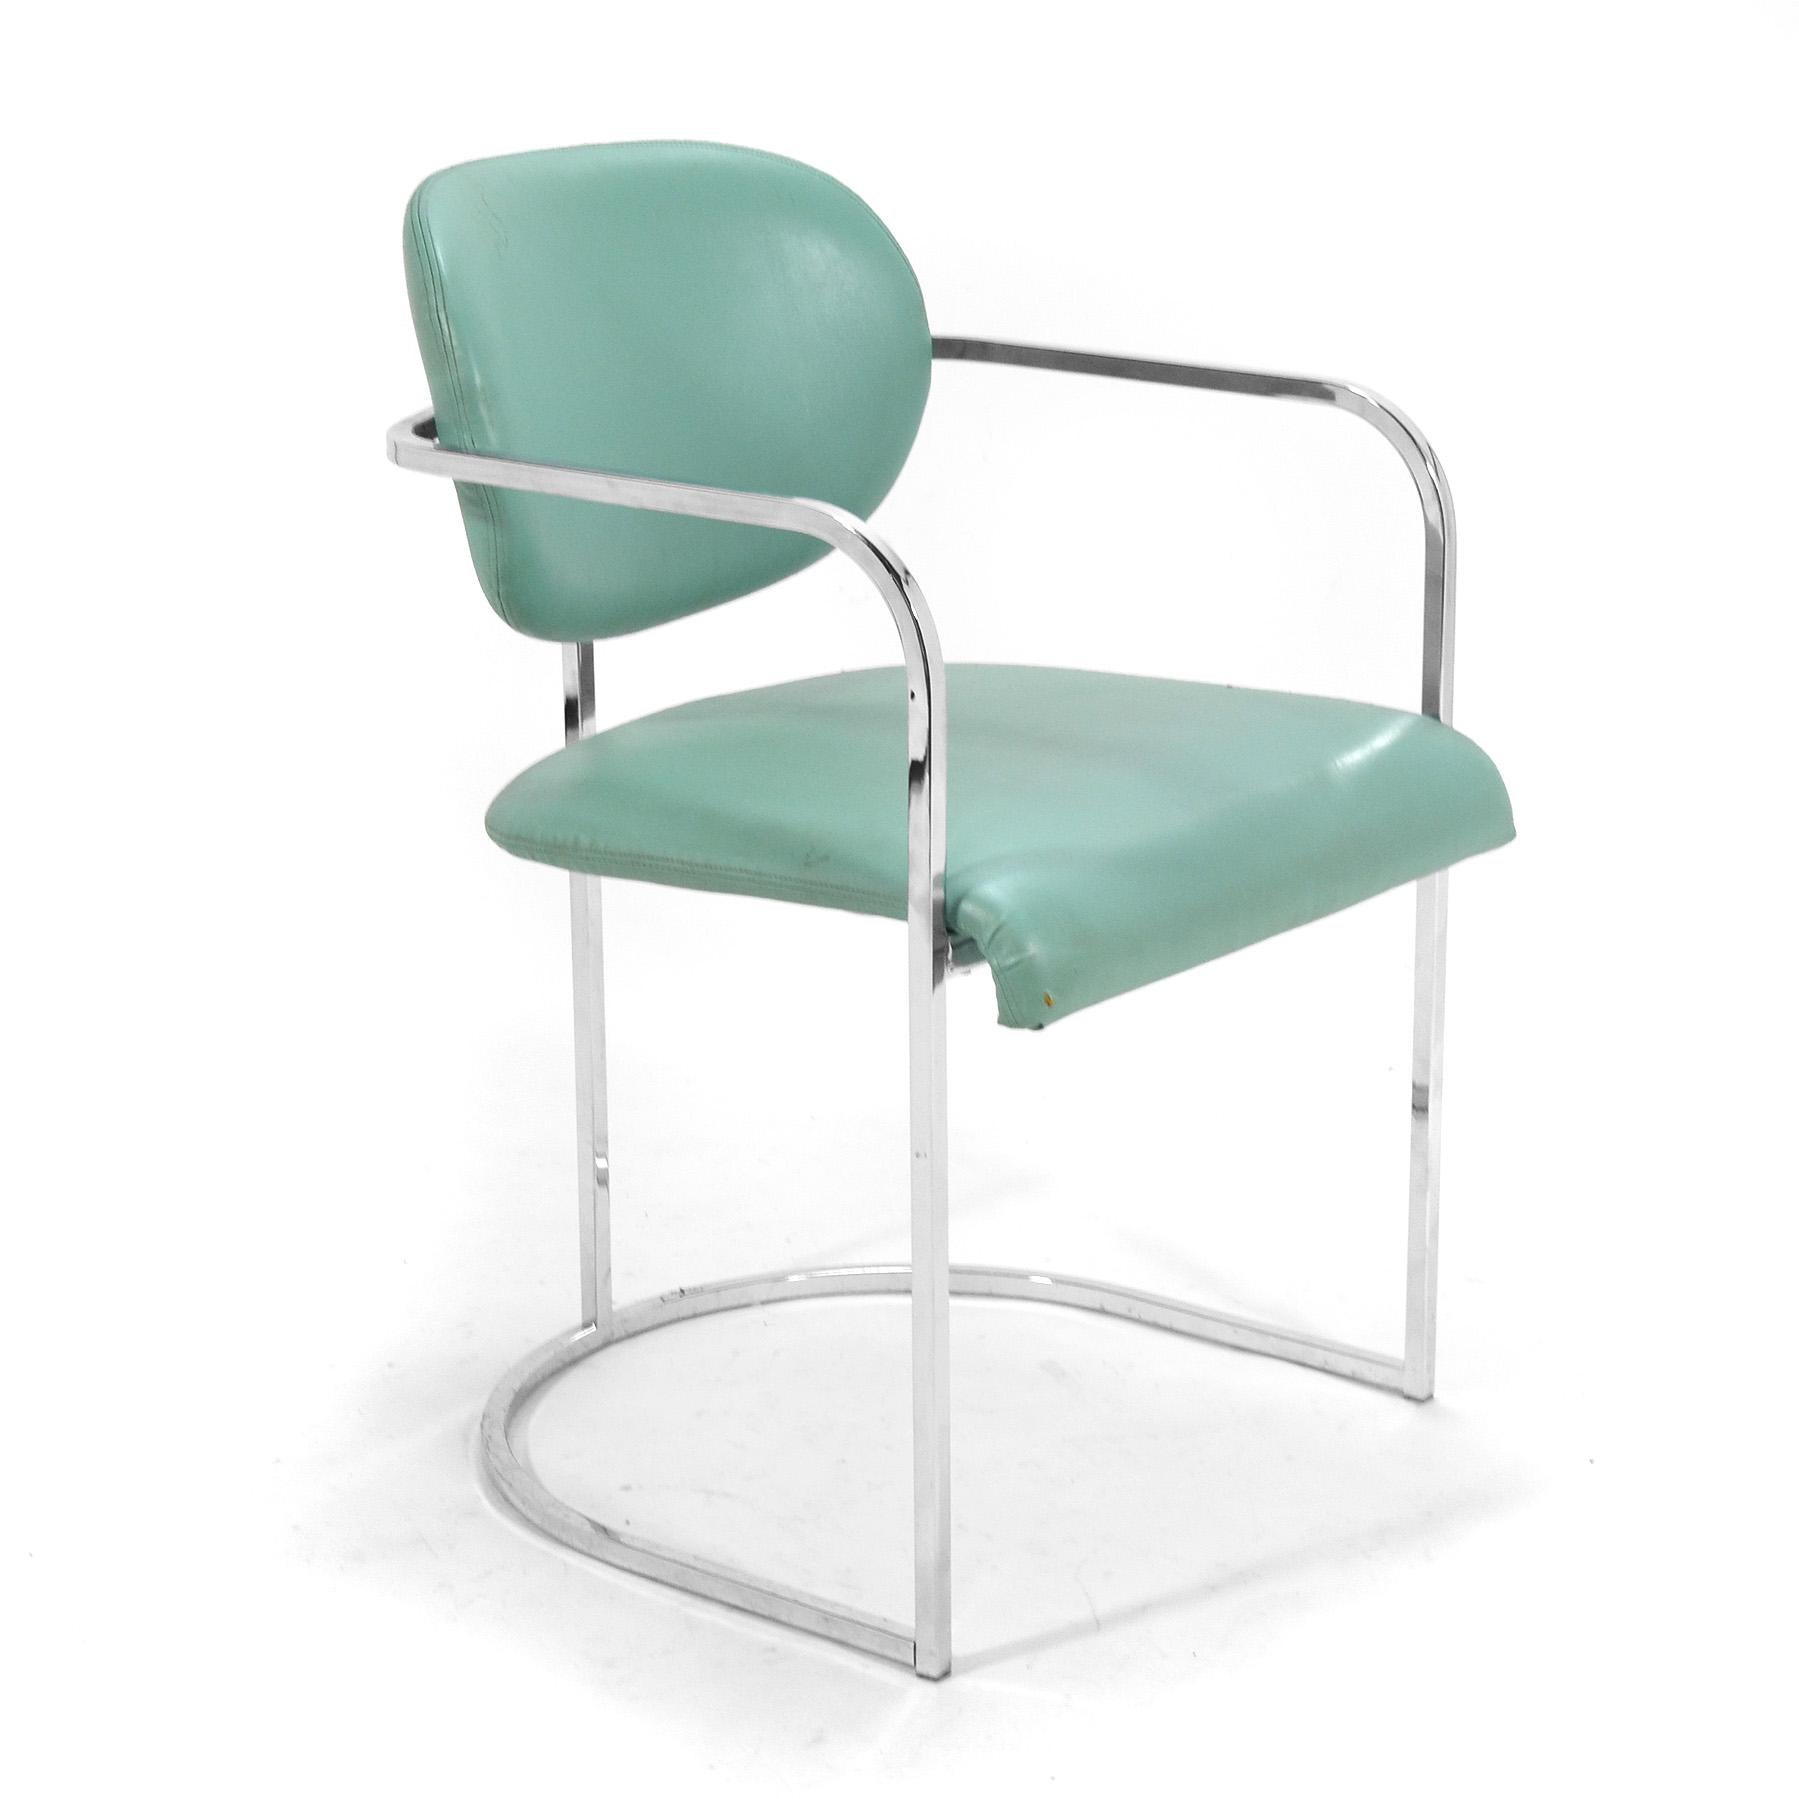 Cet ensemble de fauteuils du Design Institute America est doté d'une structure en acier chromé qui soutient les sièges et les dossiers rembourrés, ce qui leur donne un aspect flottant.
Ils conservent actuellement leur revêtement turquoise